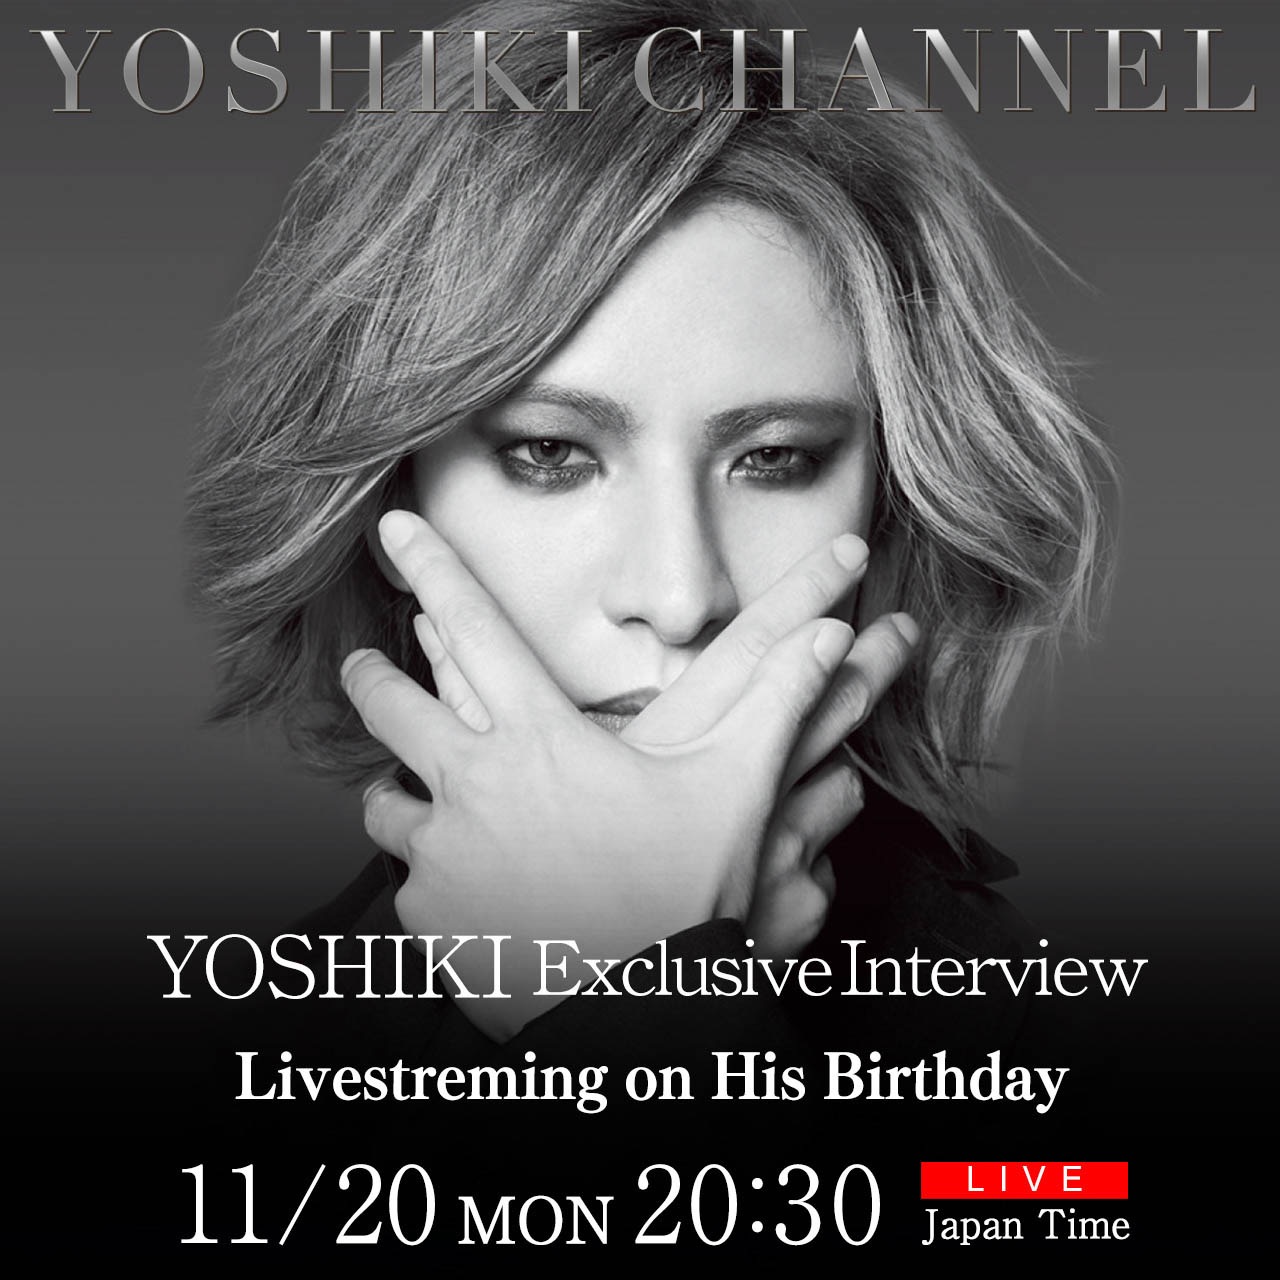 YOSHIKI単独インタビュー生放送が決定。誕生日にYOSHIKI CHANNELで独占生配信 - 画像一覧（1/2）